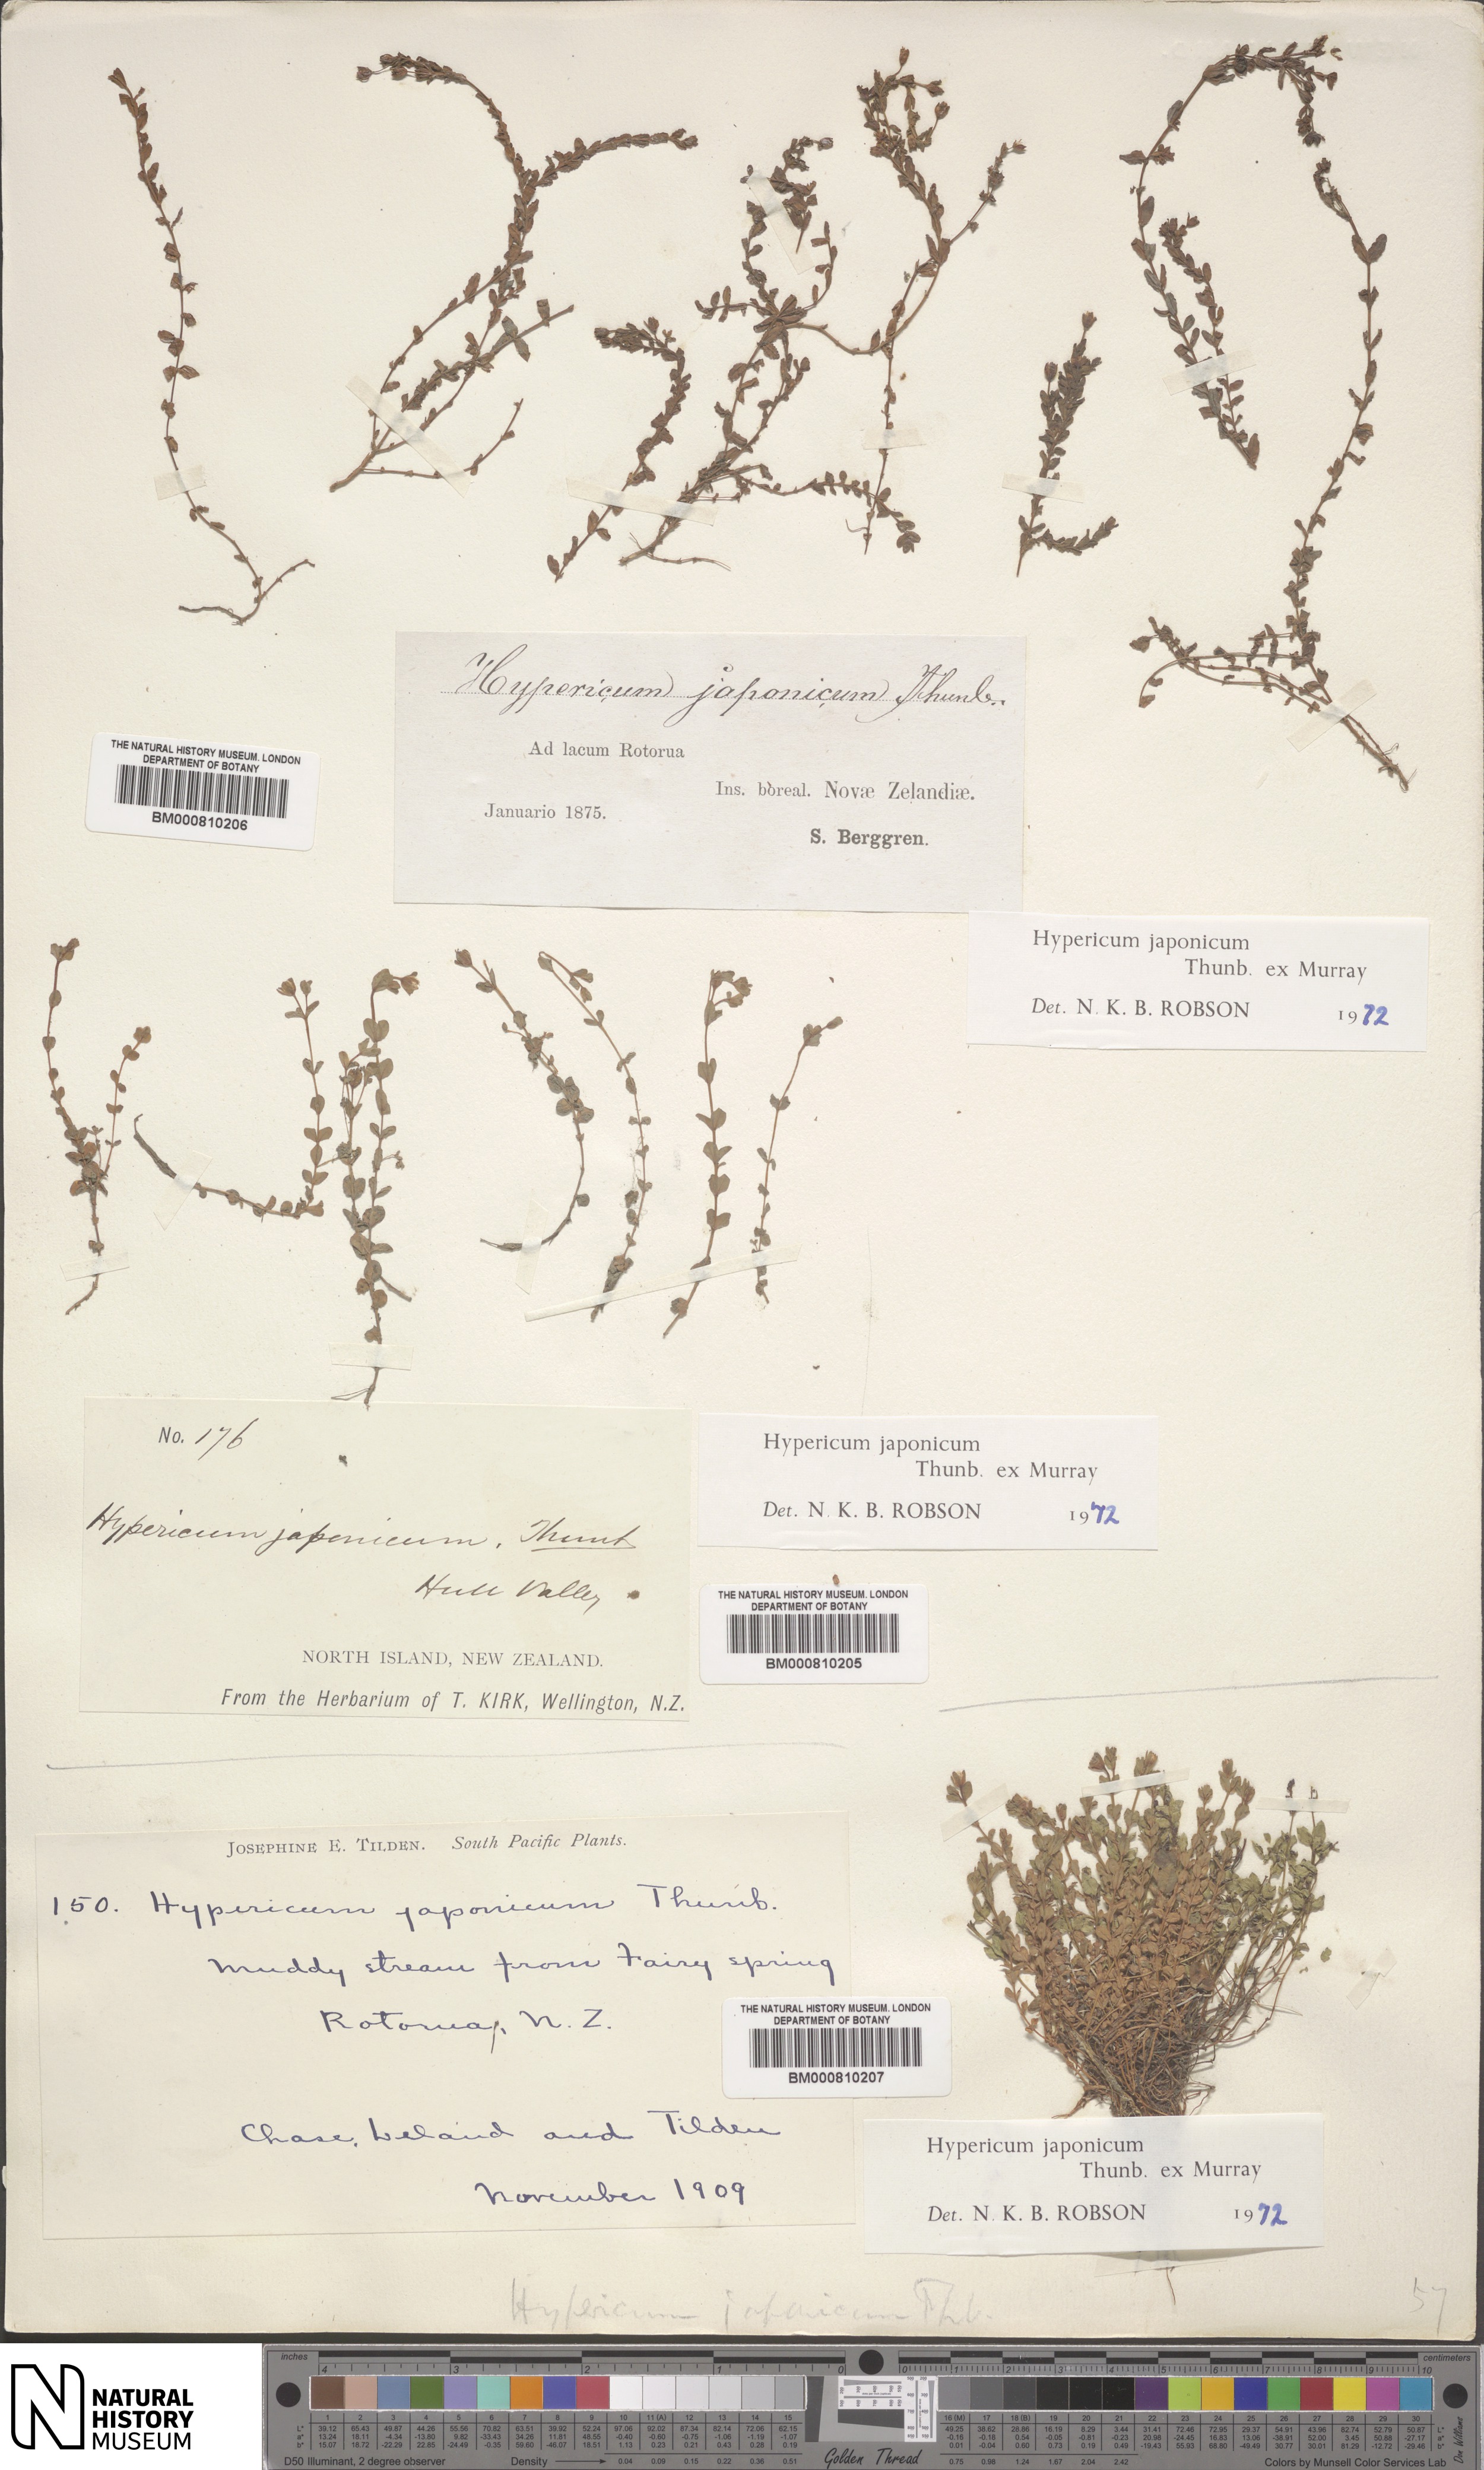 Herbarium specimen image of Hypericum japonicum Thunb., part of the ...